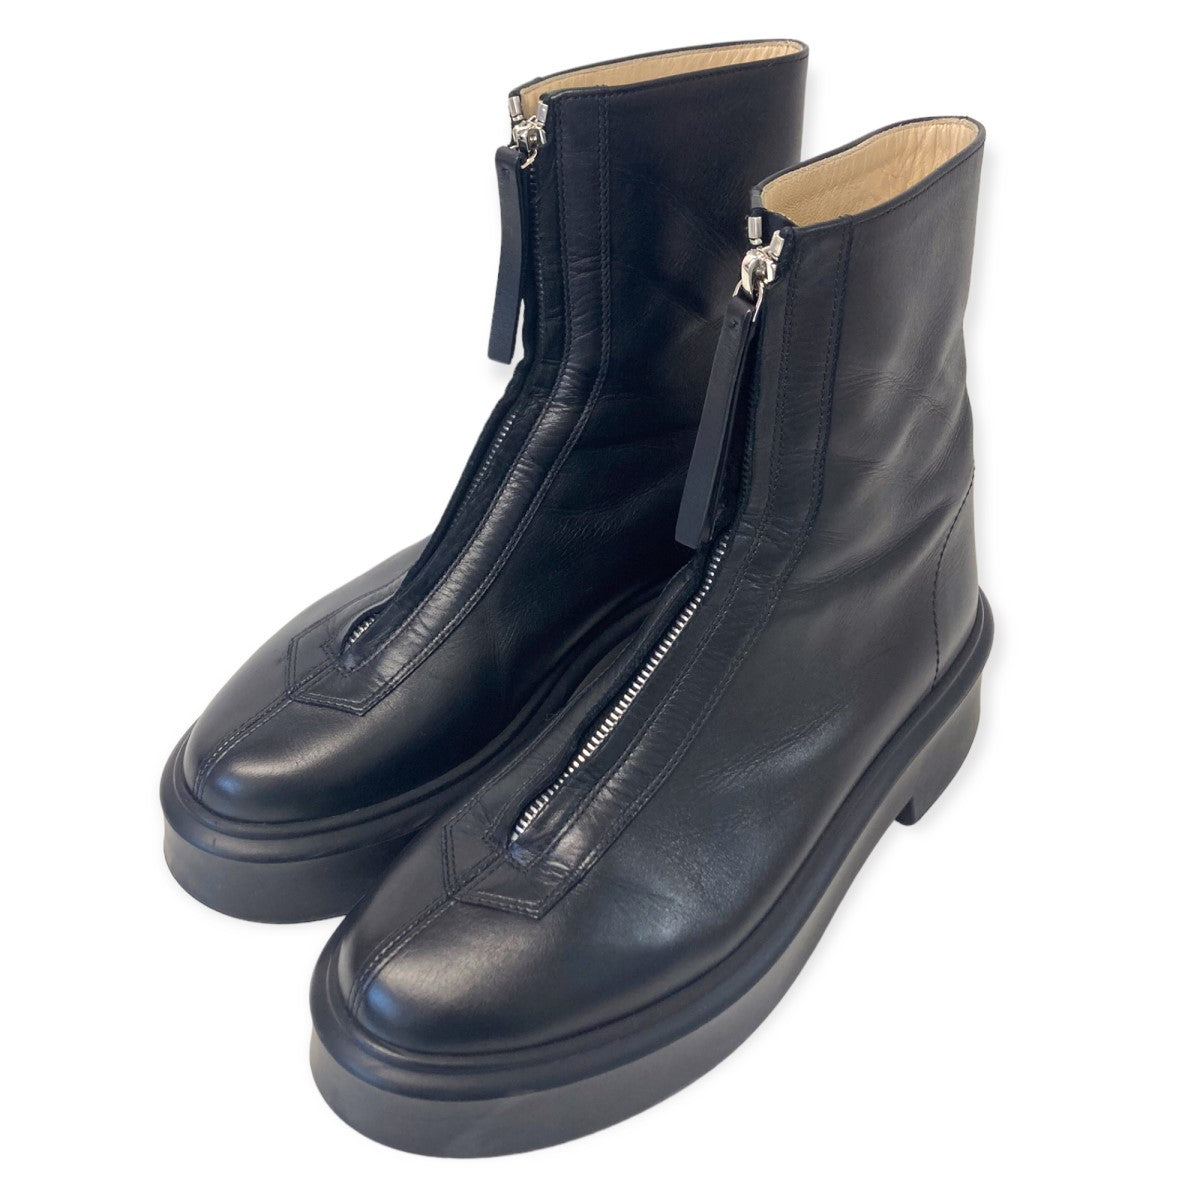 THE ROW(ザロウ) 「Zipped Boot 1」センタージップブーツ ブラック サイズ 11｜【公式】カインドオルオンライン  ブランド古着・中古通販【kindal】